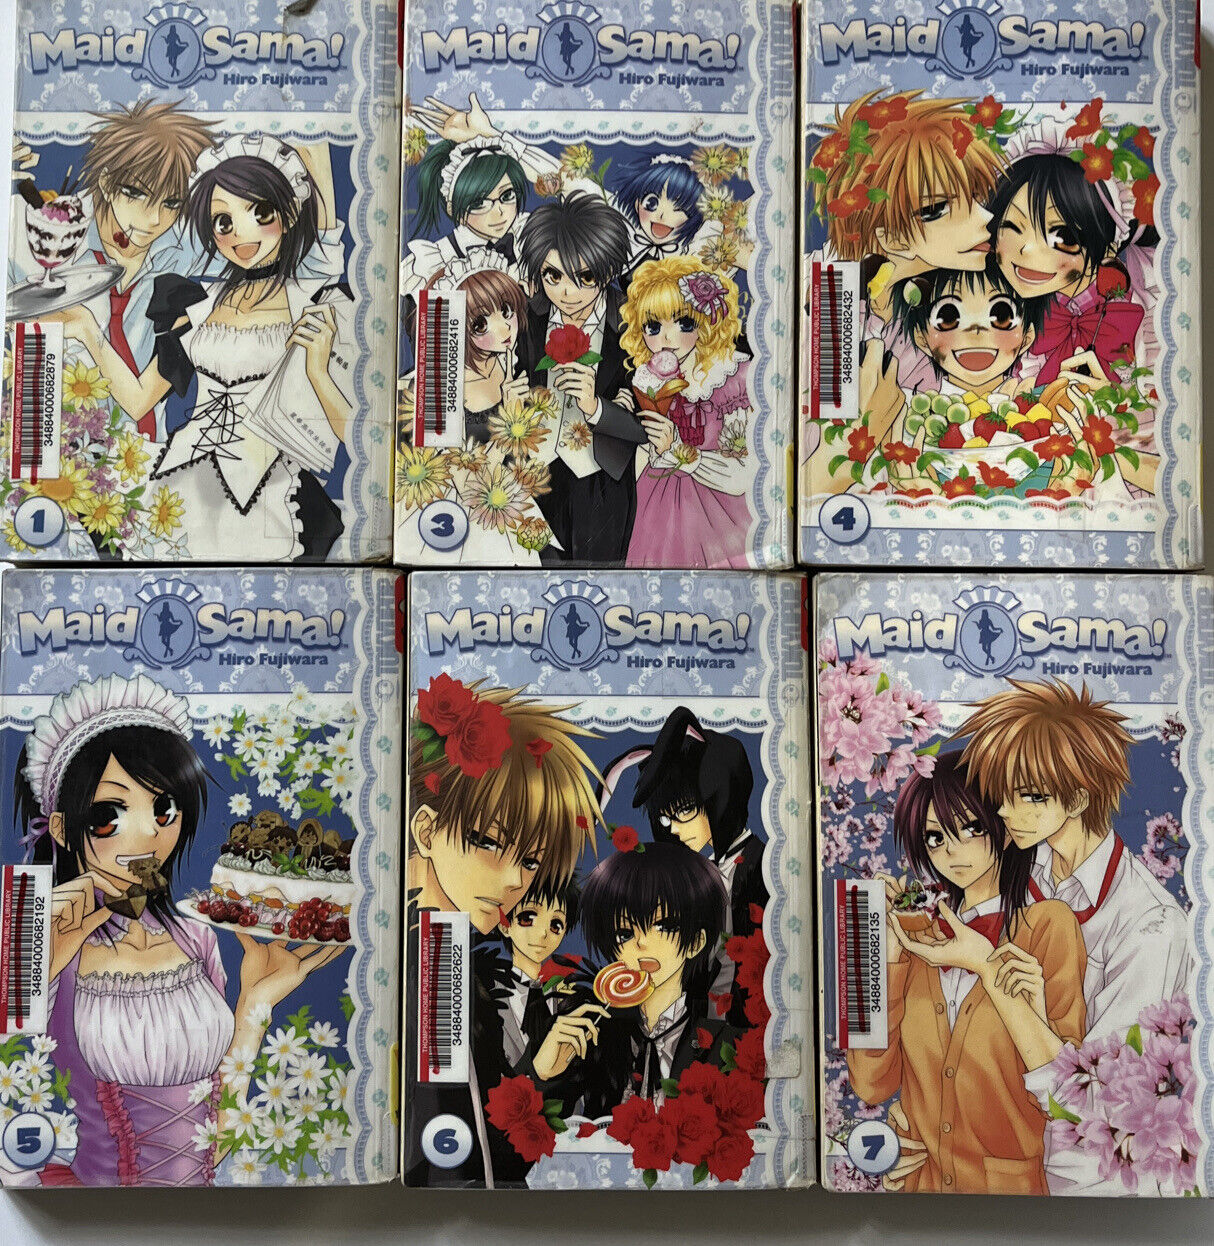 Maid Sama Vol 1, 3, 4, 5, 6, 7 Manga Graphic  Tokyopop English Hiro Fujiwara